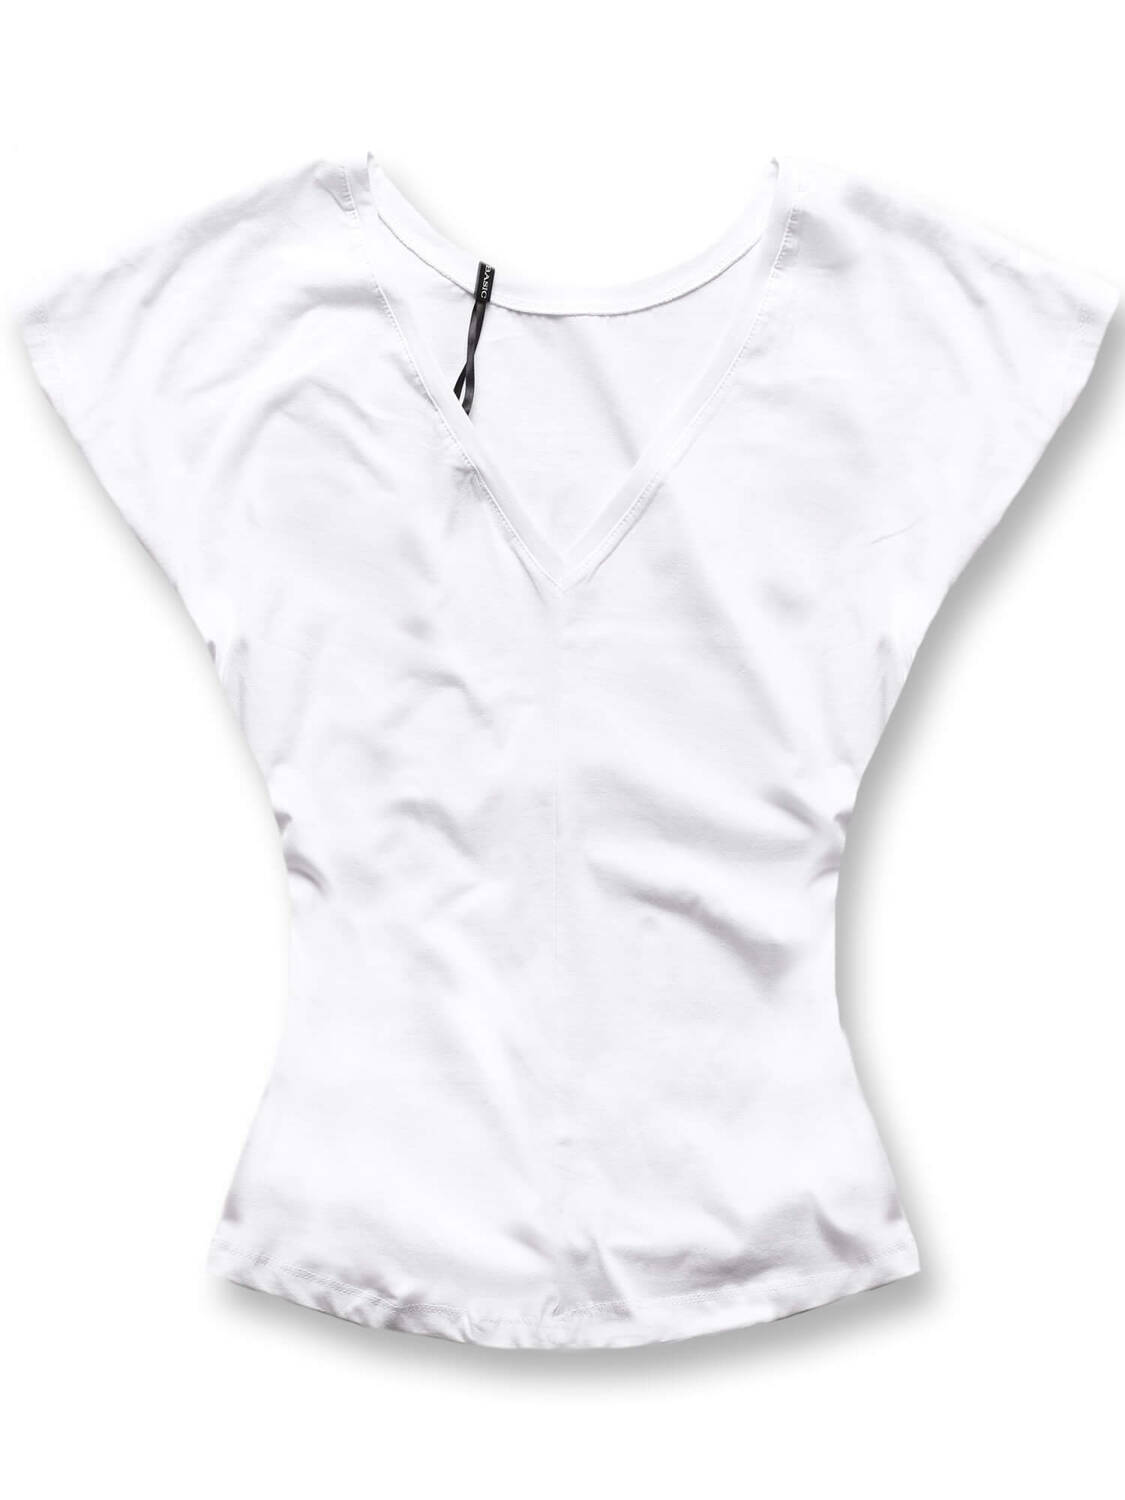 Biała gładka bluzka, top basic, t-shirt z dekoltem V z tyłu